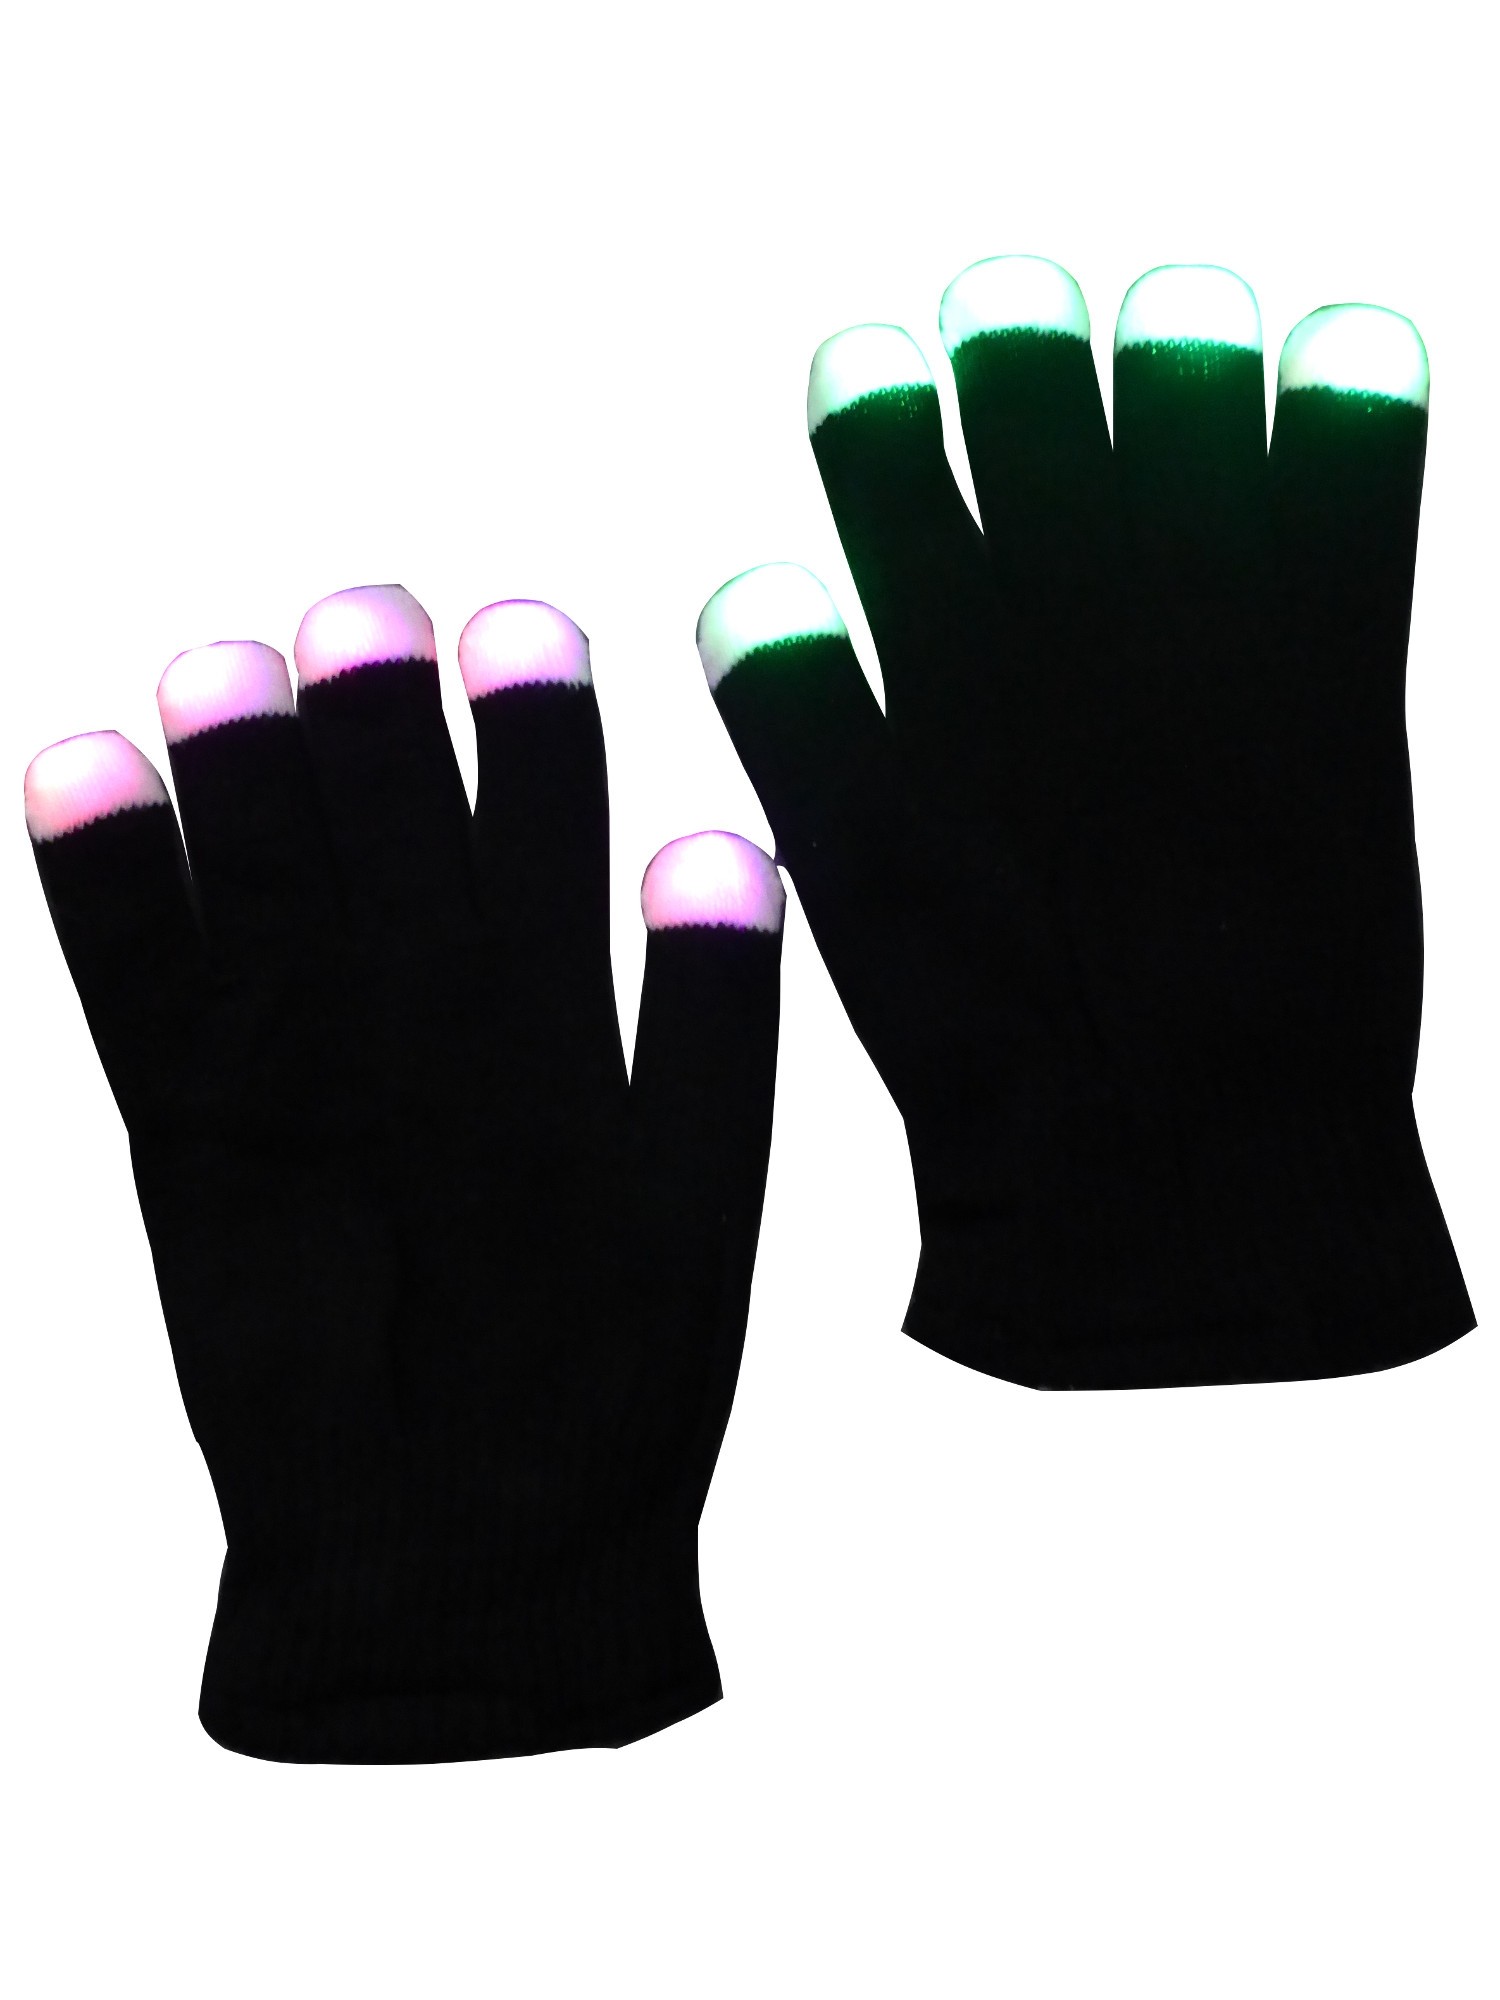 grau.zone in verschiedenen Farben leuchtende schwarze LED Handschuhe Party Handschuhe Fingerhandschuhe blinkende Handschuhe leuchtende Handschuhe